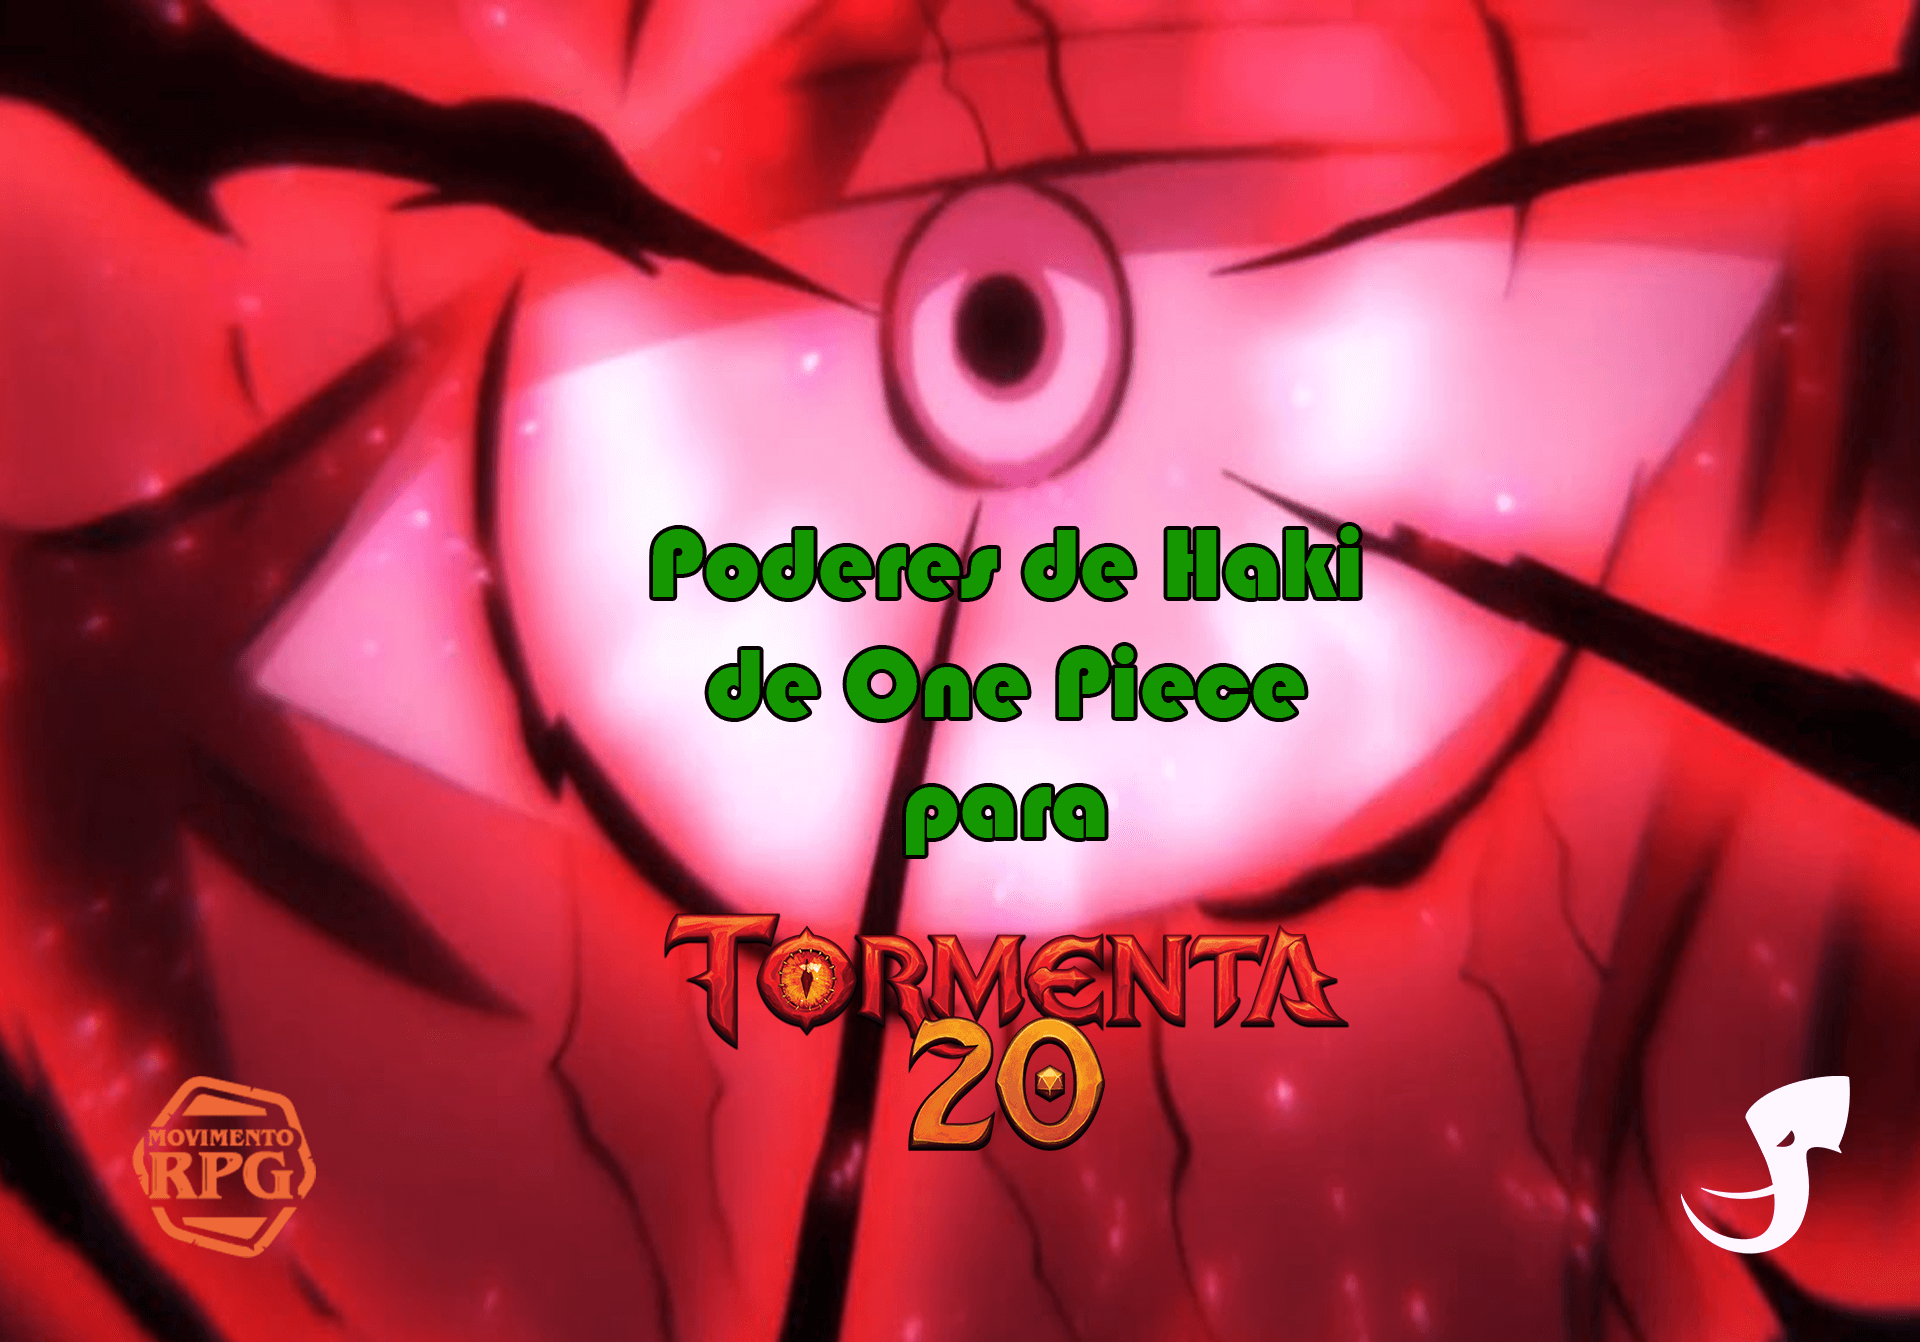 Haki de One Piece em Tormenta20